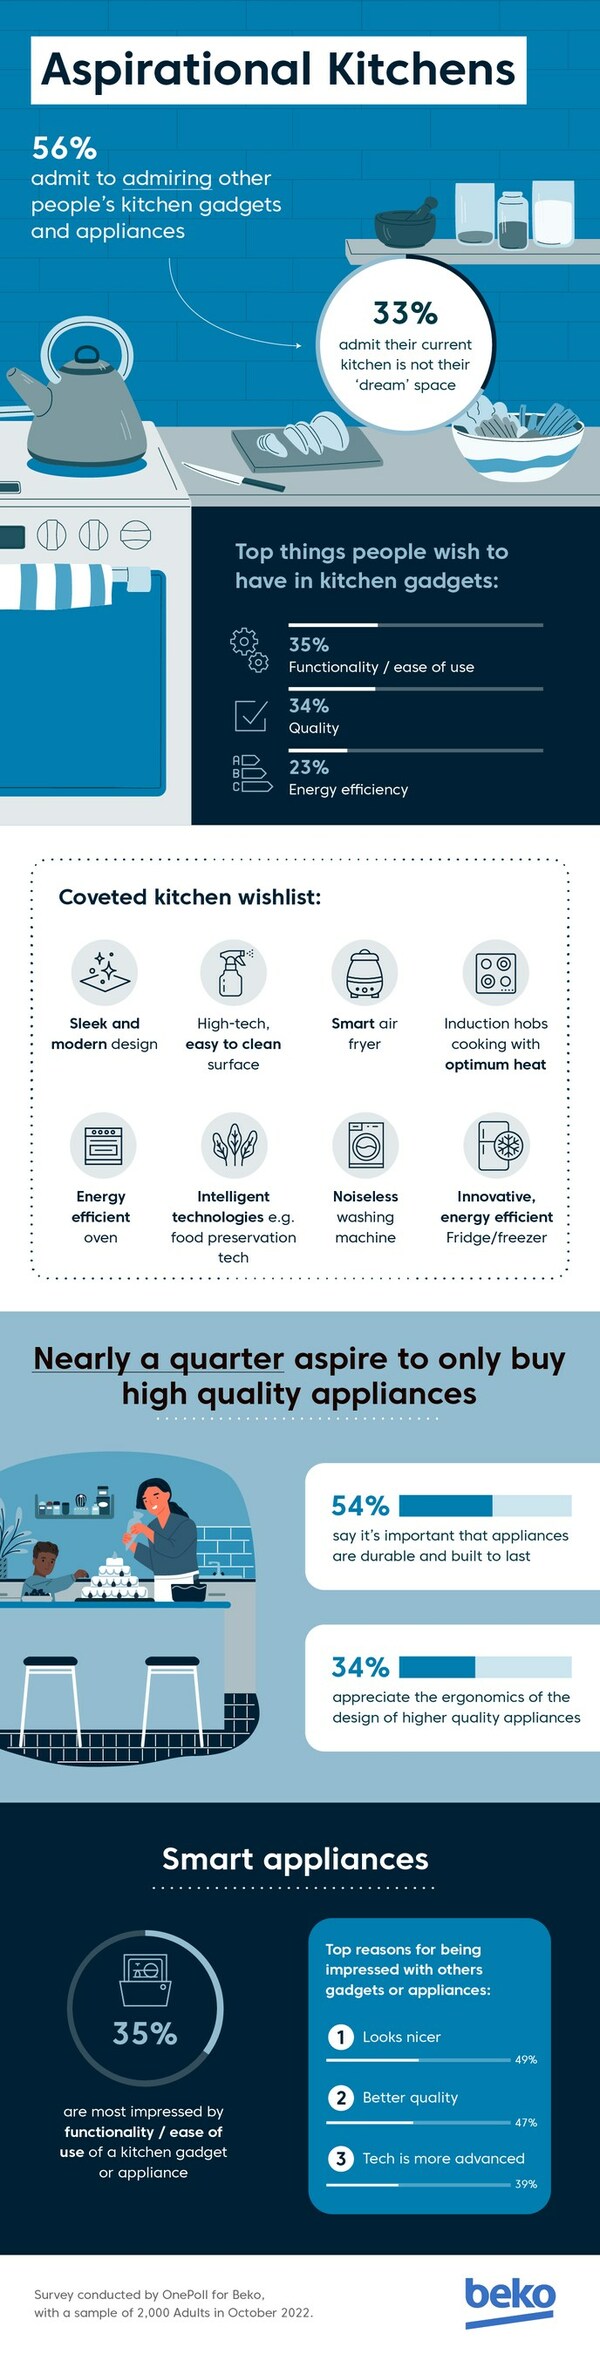 Bekoは、消費者が耐久性のある高品質のデザインを支持してすれば、無駄の多いキッチントレンドを避けることができることを明らかにしました